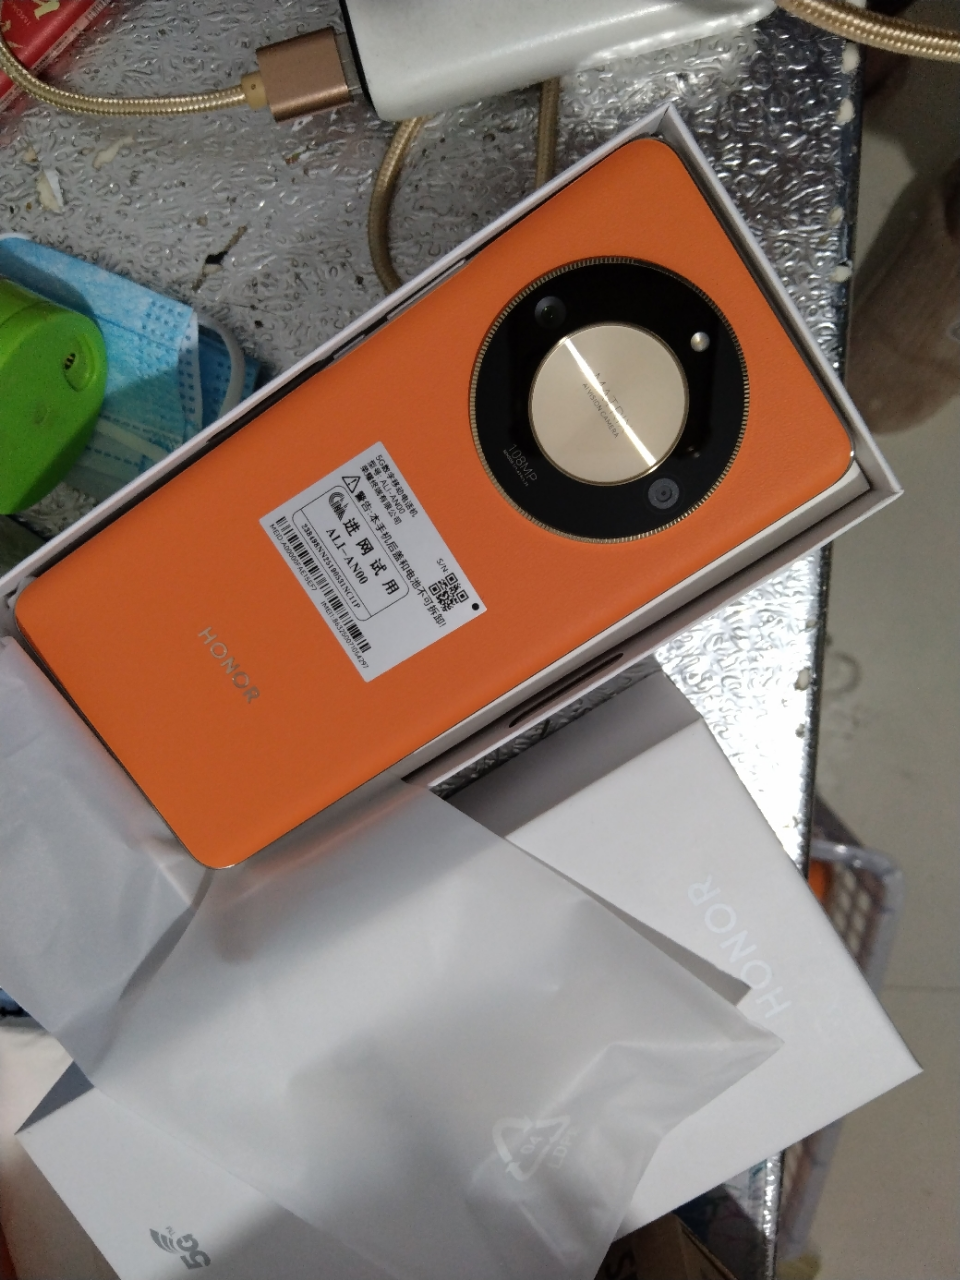 荣耀X50 16GB+512GB 燃橙色 骁龙6芯片 1.5K超清护眼曲屏 5800mAh大电池 5G移动联通电信全网通手机晒单图